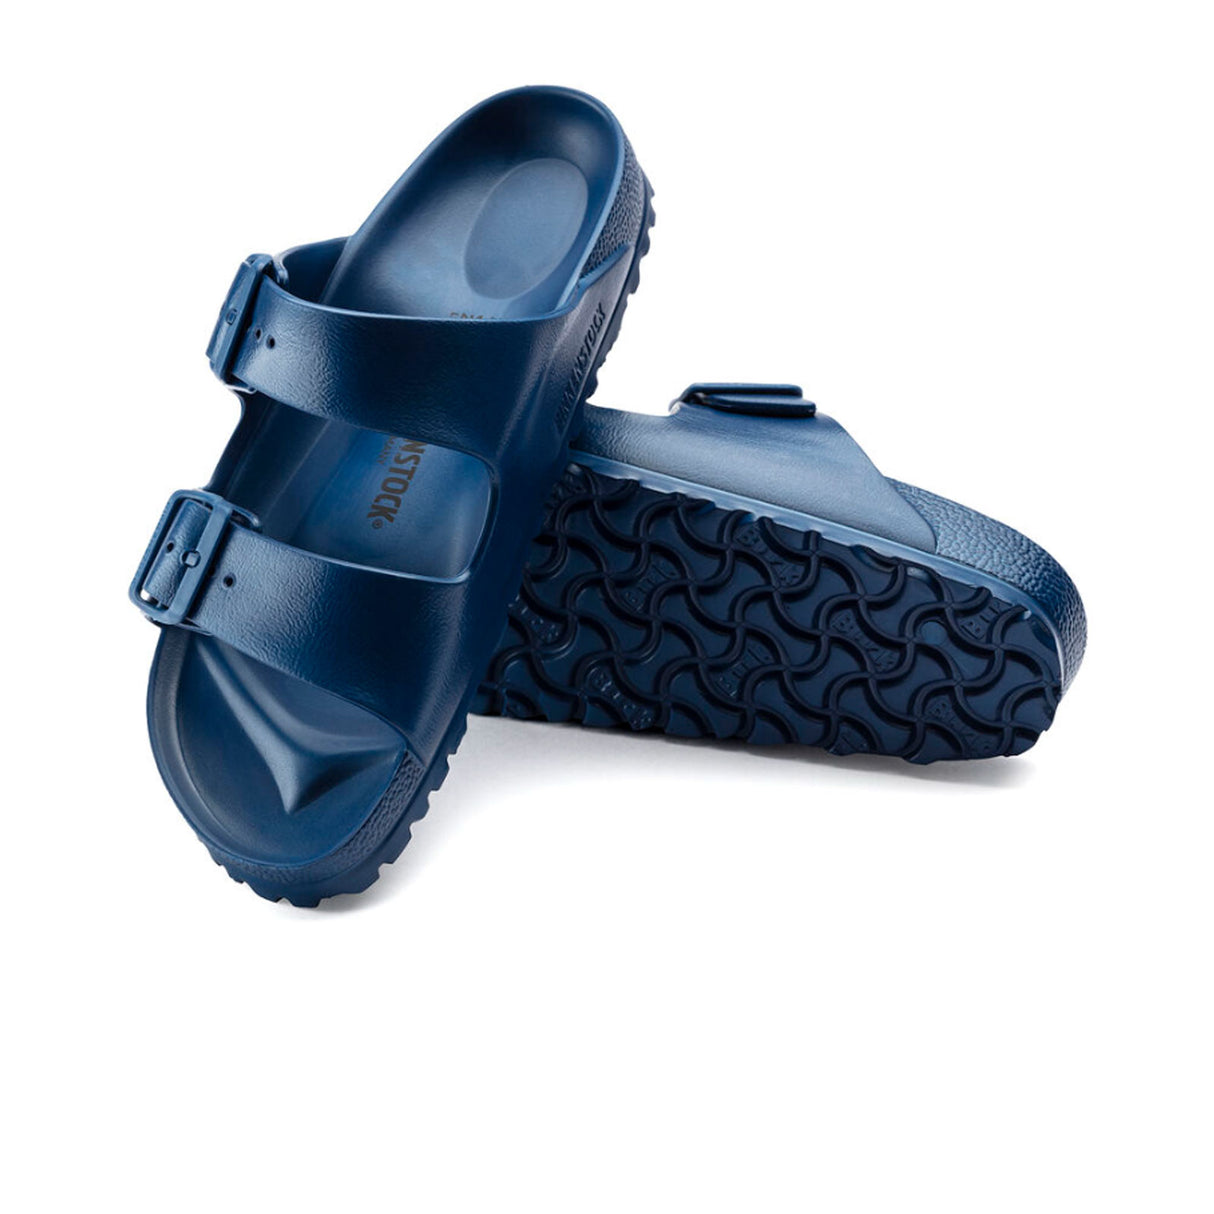 Birkenstock Arizona EVA Sandal (Unisex) - Navy Sandals - Slide - The Heel Shoe Fitters